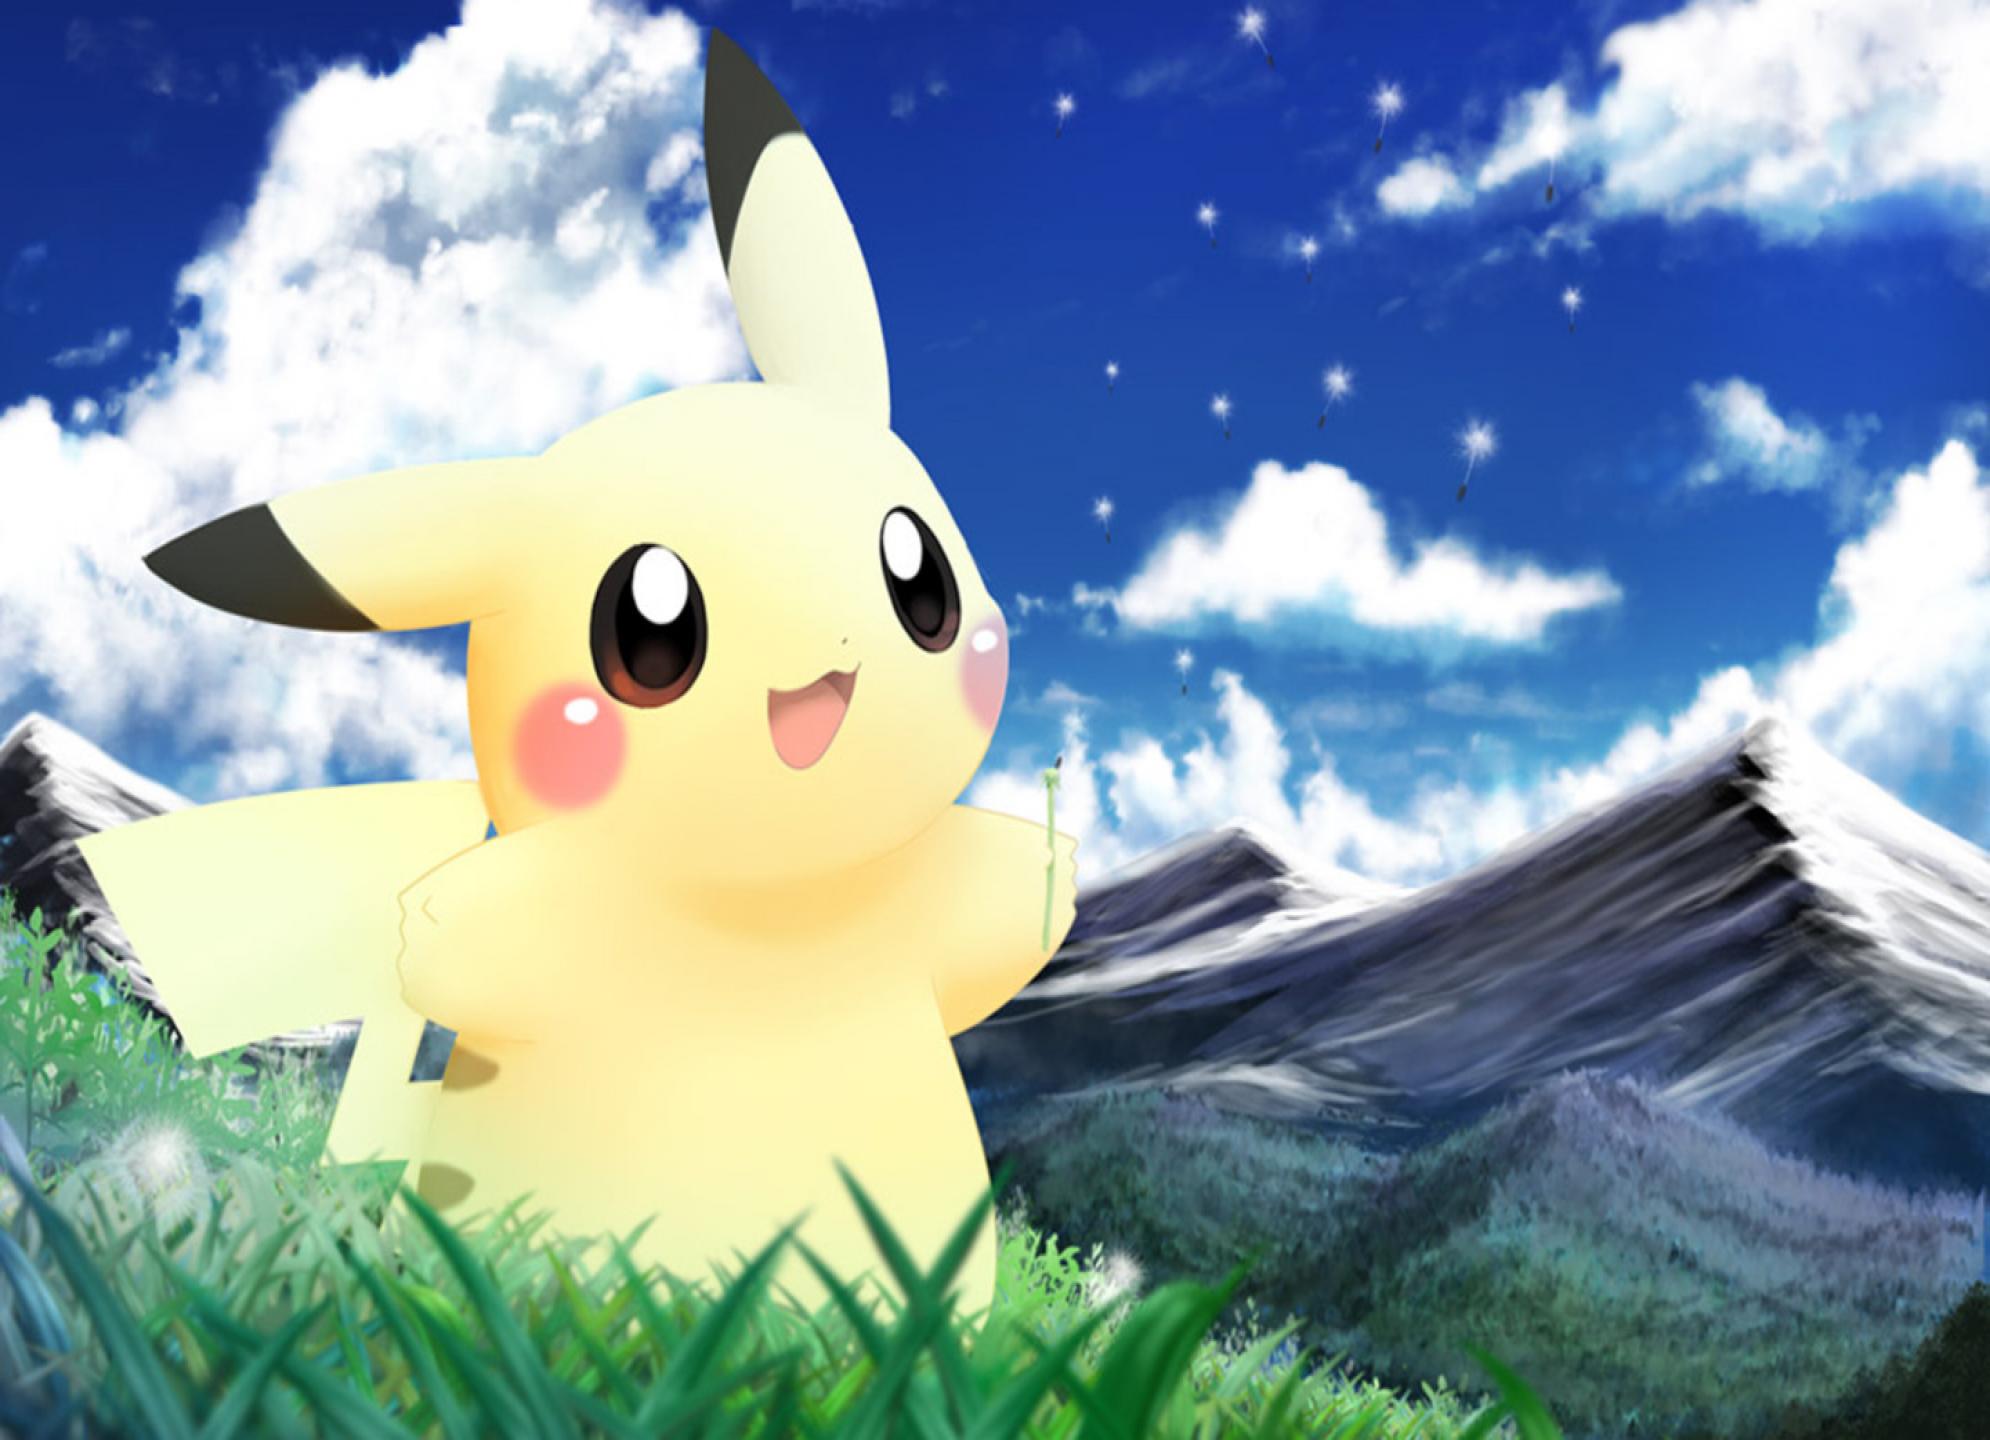 Cute Pikachu Wallpaper HD In Games Imageci